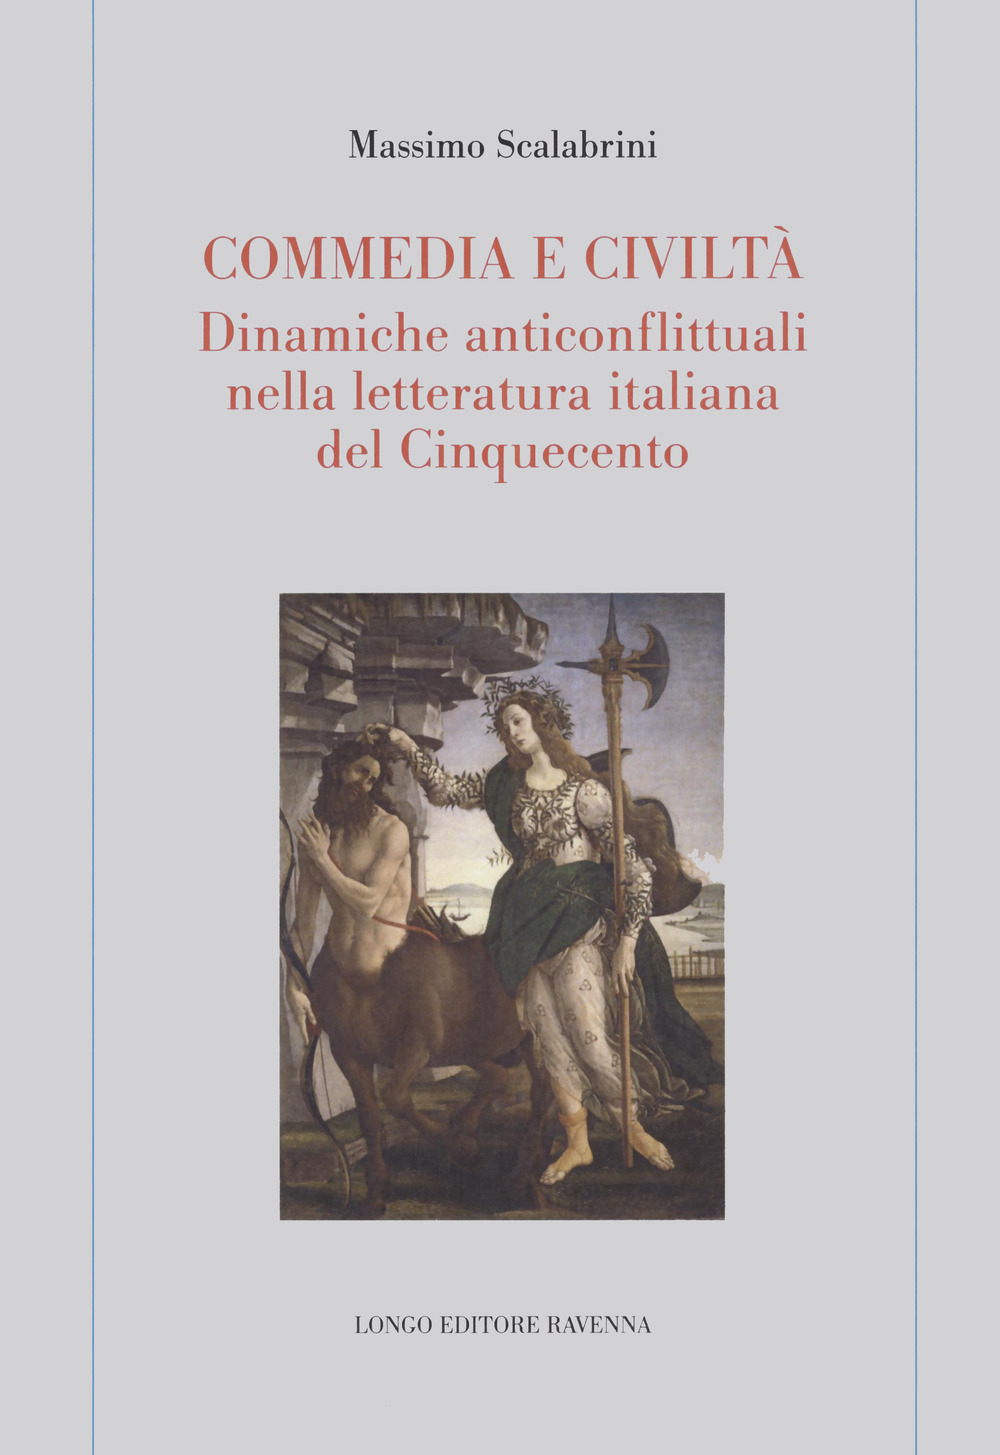 Commedia e civiltà. Dinamiche anticonflittuali nella letteratura italiana del Cinquecento